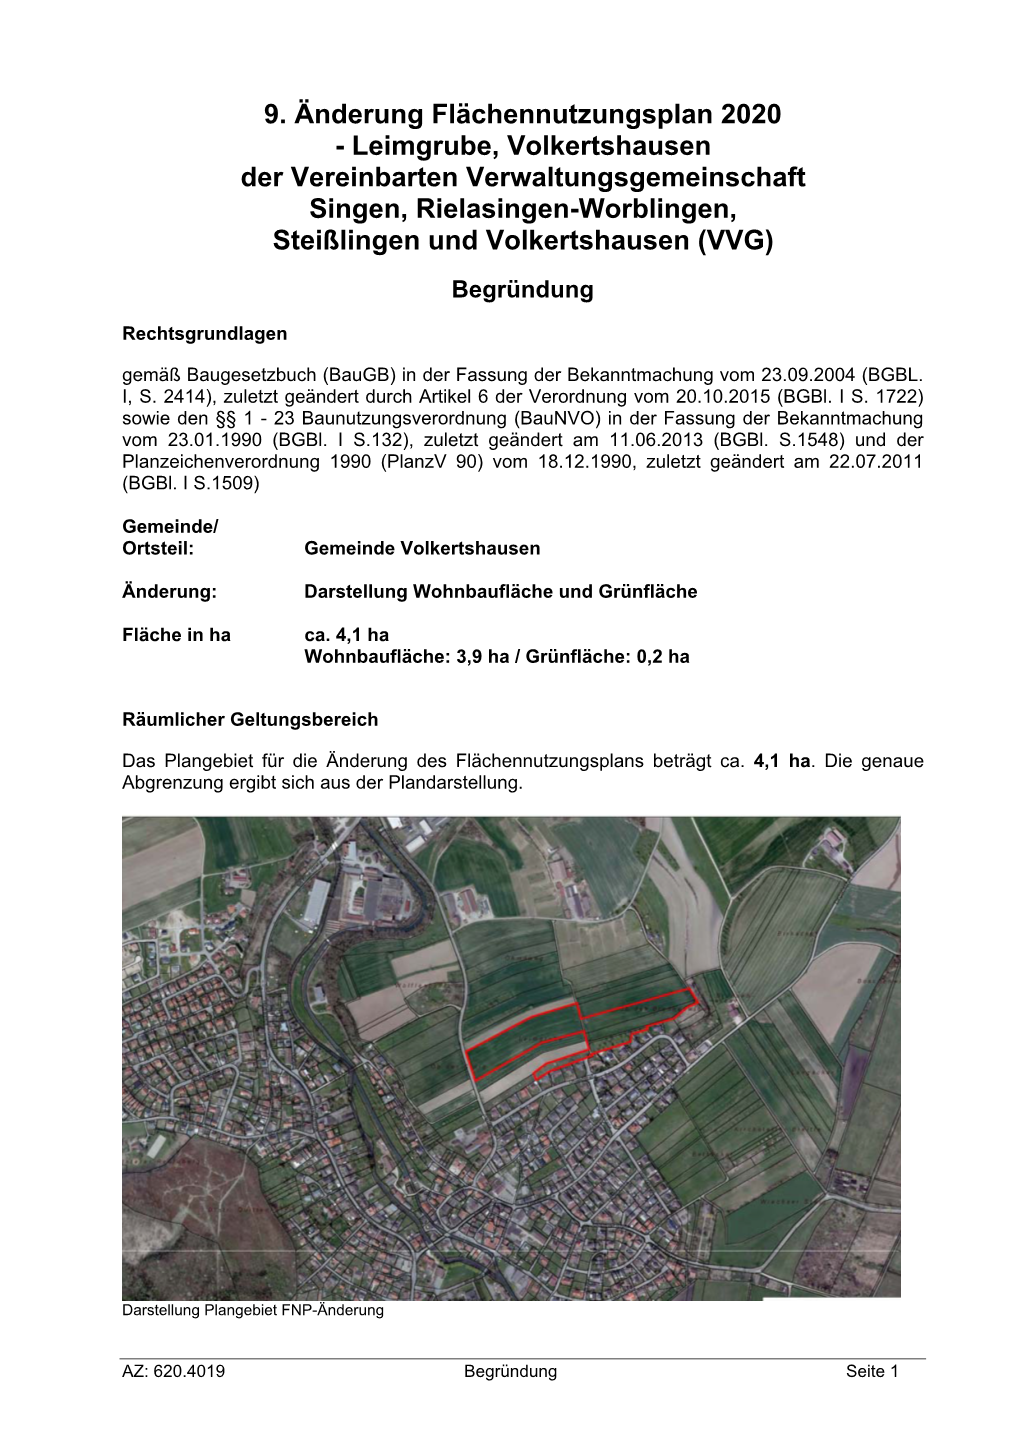 Leimgrube, Volkertshausen Der Vereinbarten Verwaltungsgemeinschaft Singen, Rielasingen-Worblingen, Steißlingen Und Volkertshausen (VVG)